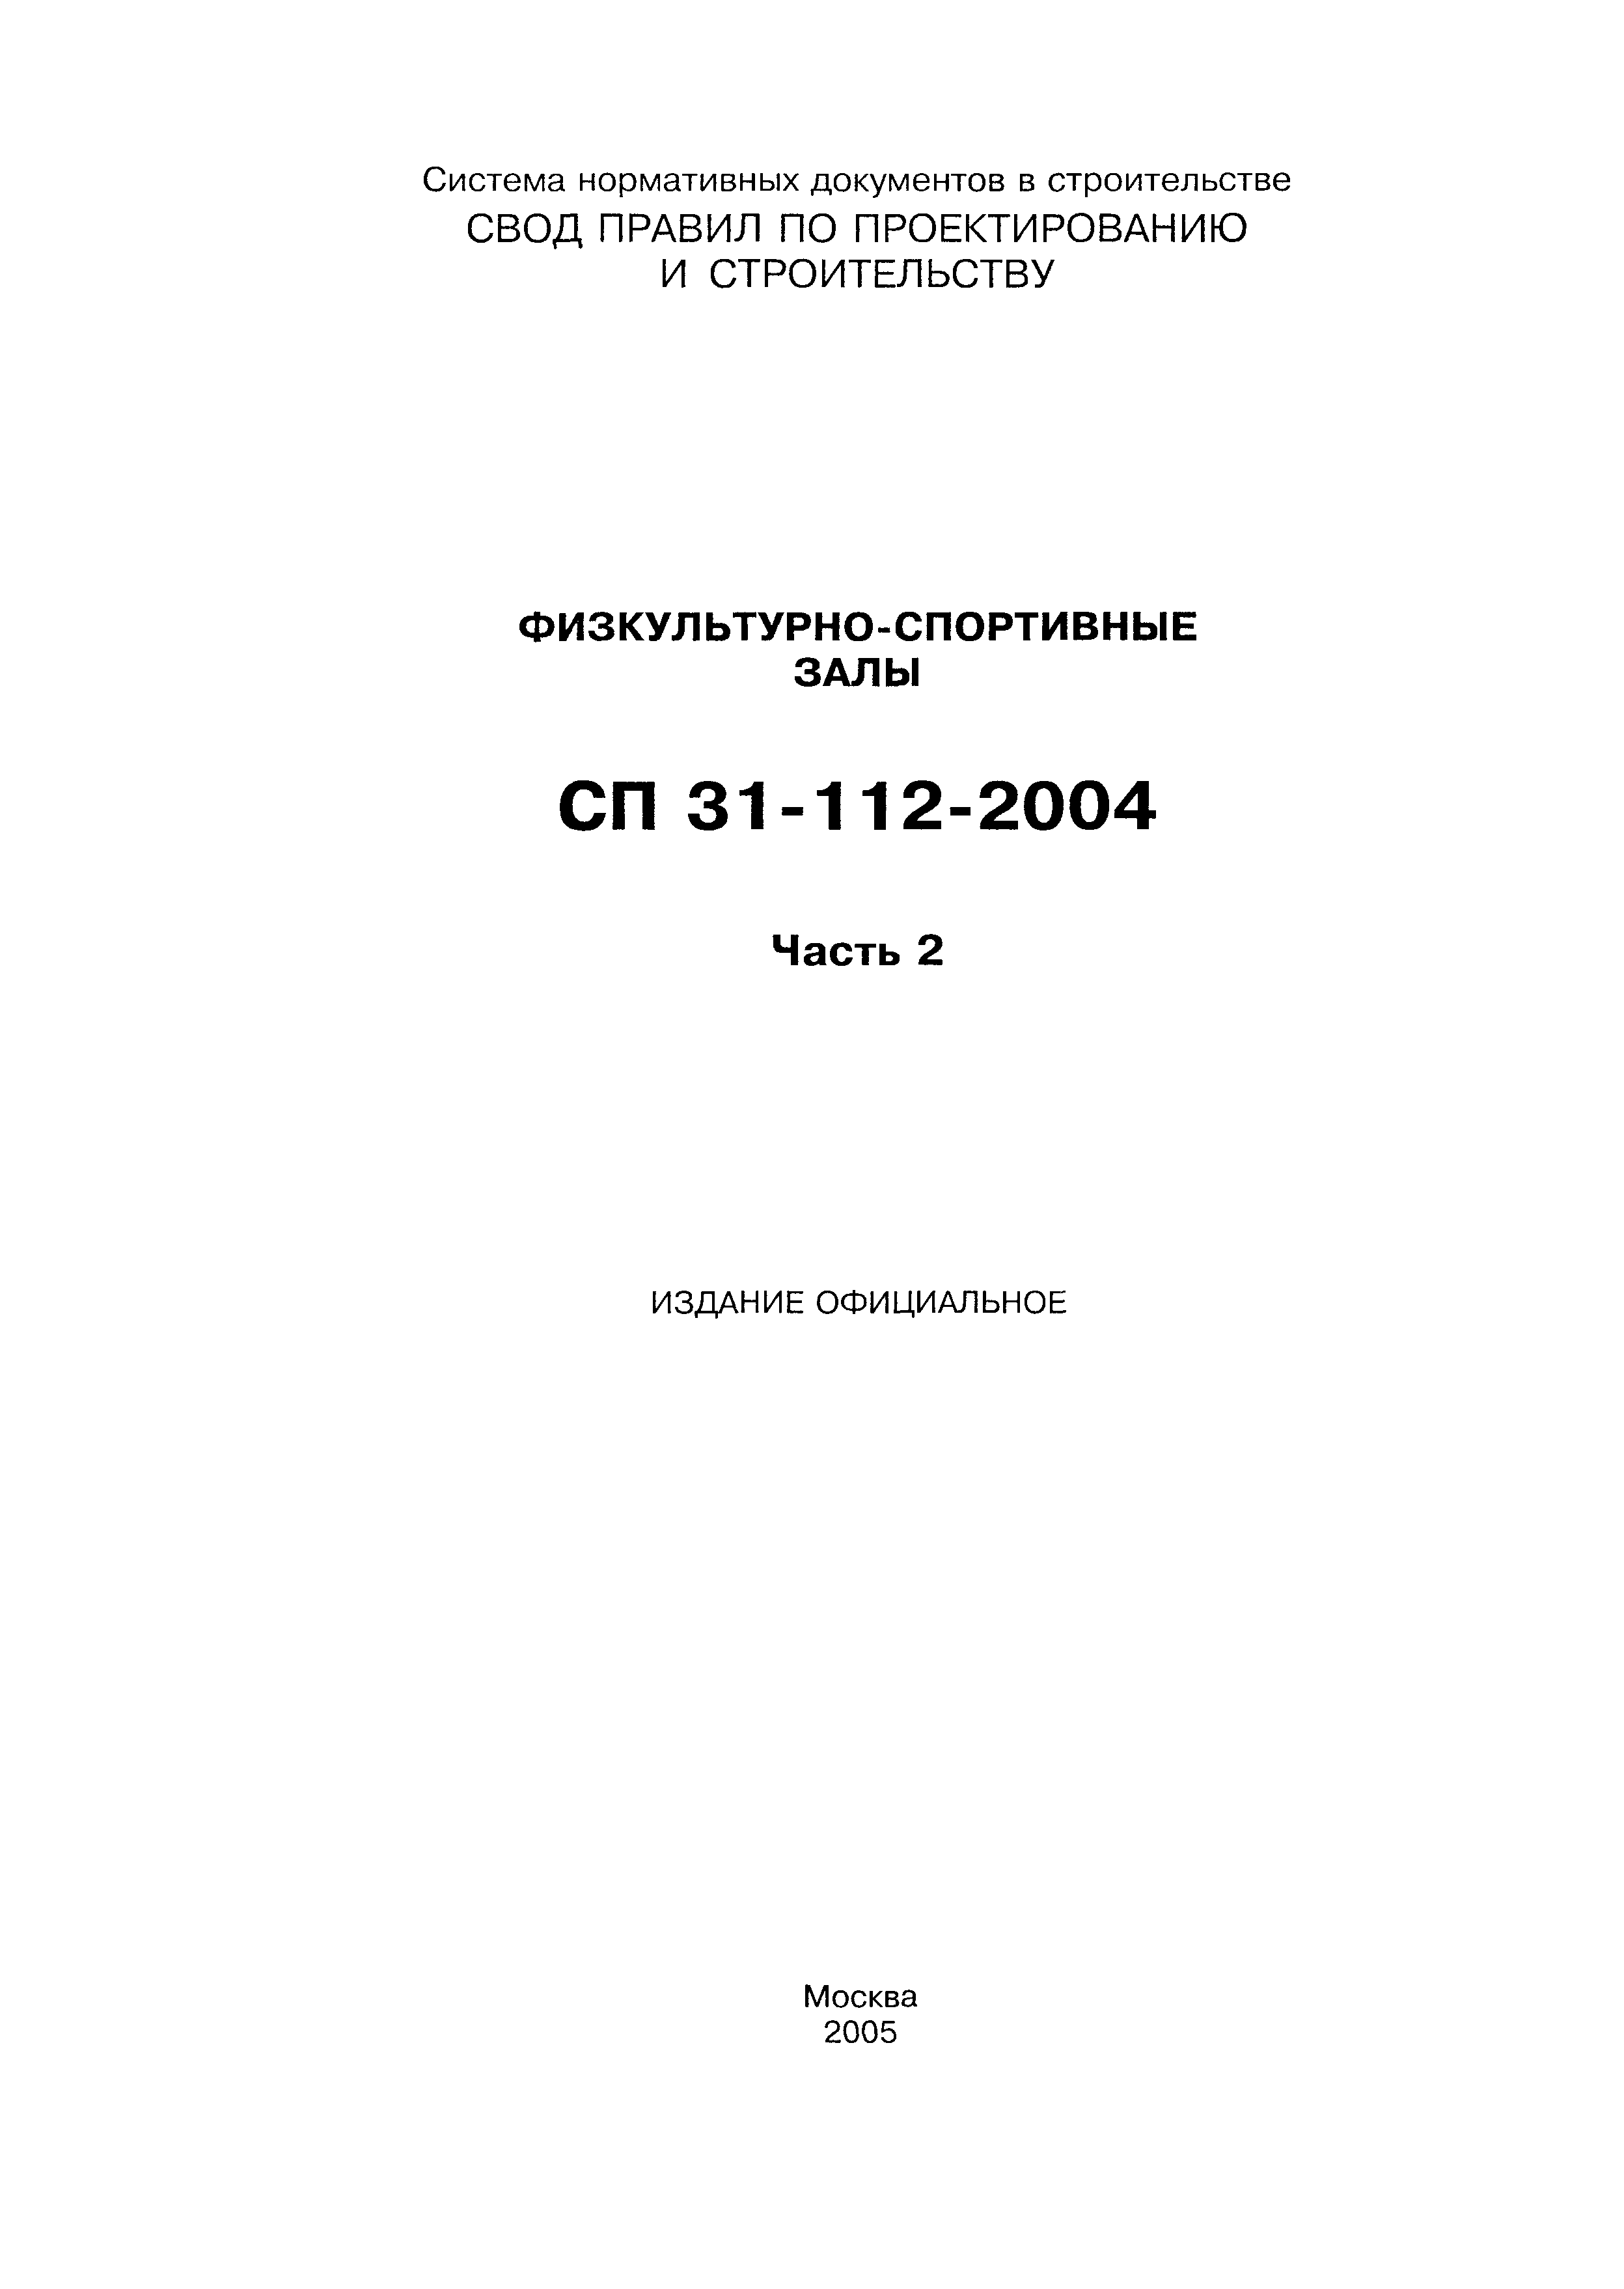 СП 31-112-2004